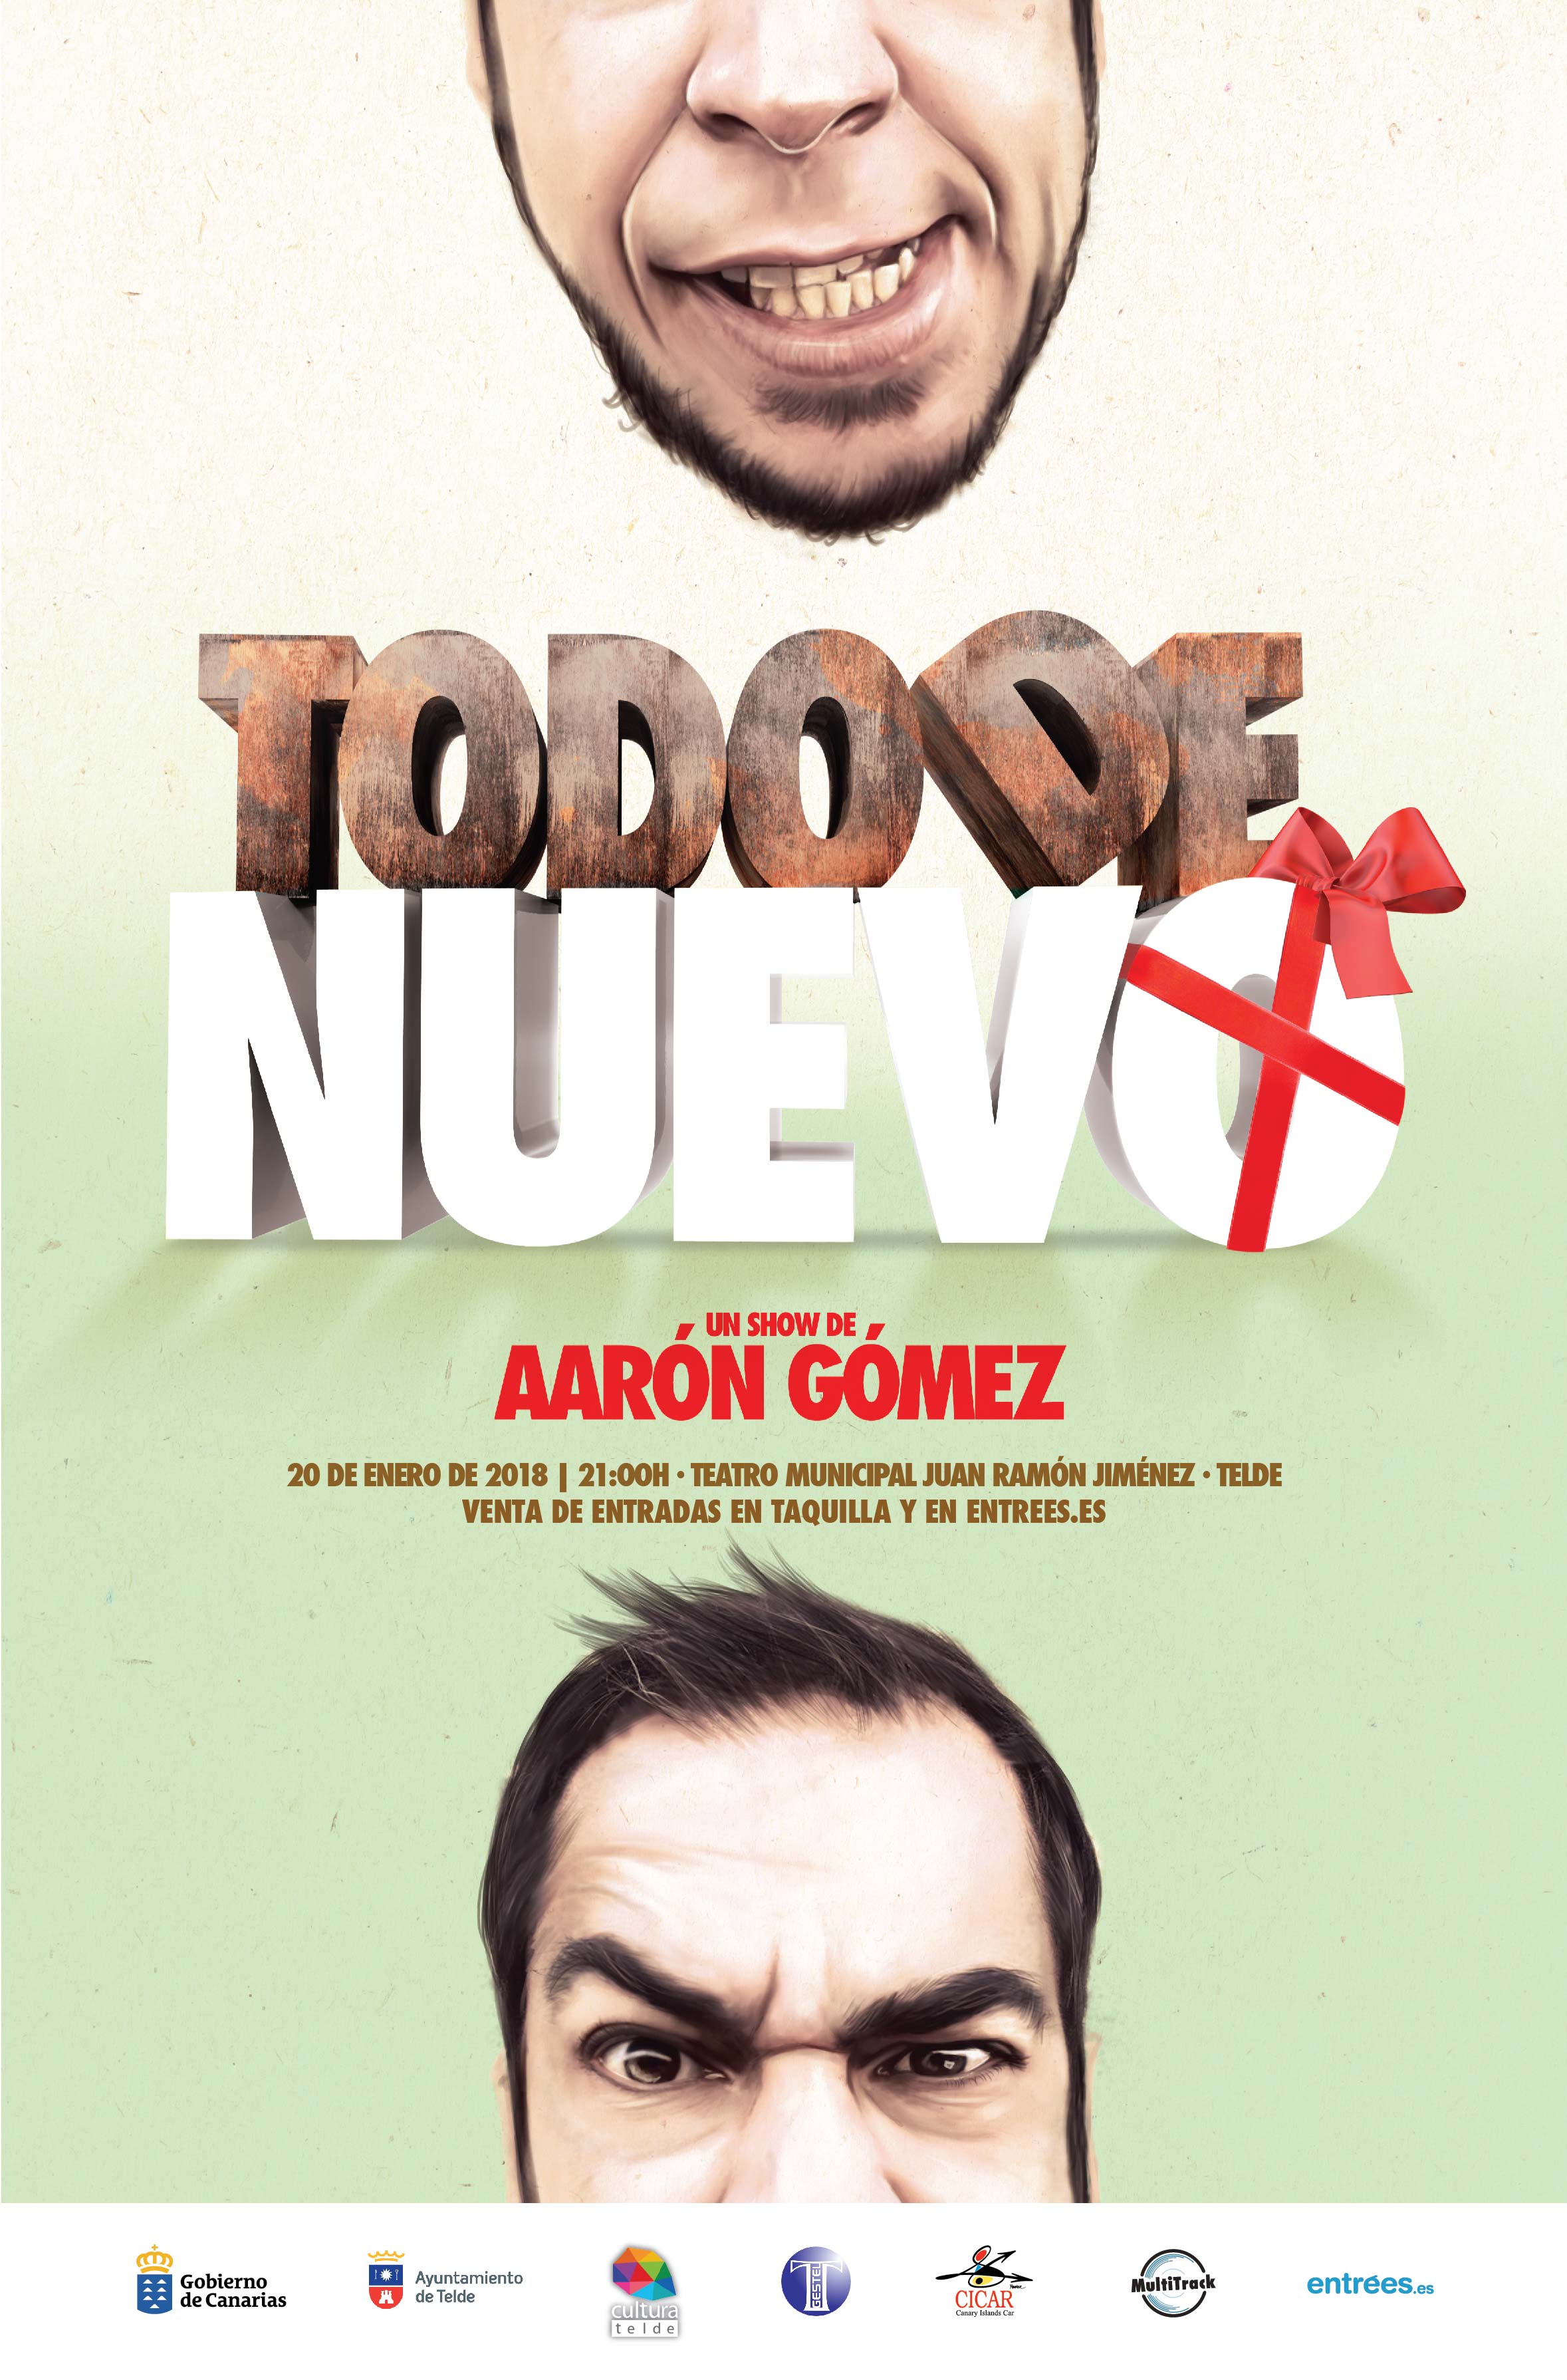 Aarón Gómez estará actuando en el Teatro Municipal Juan Ramón Jiménez de Telde